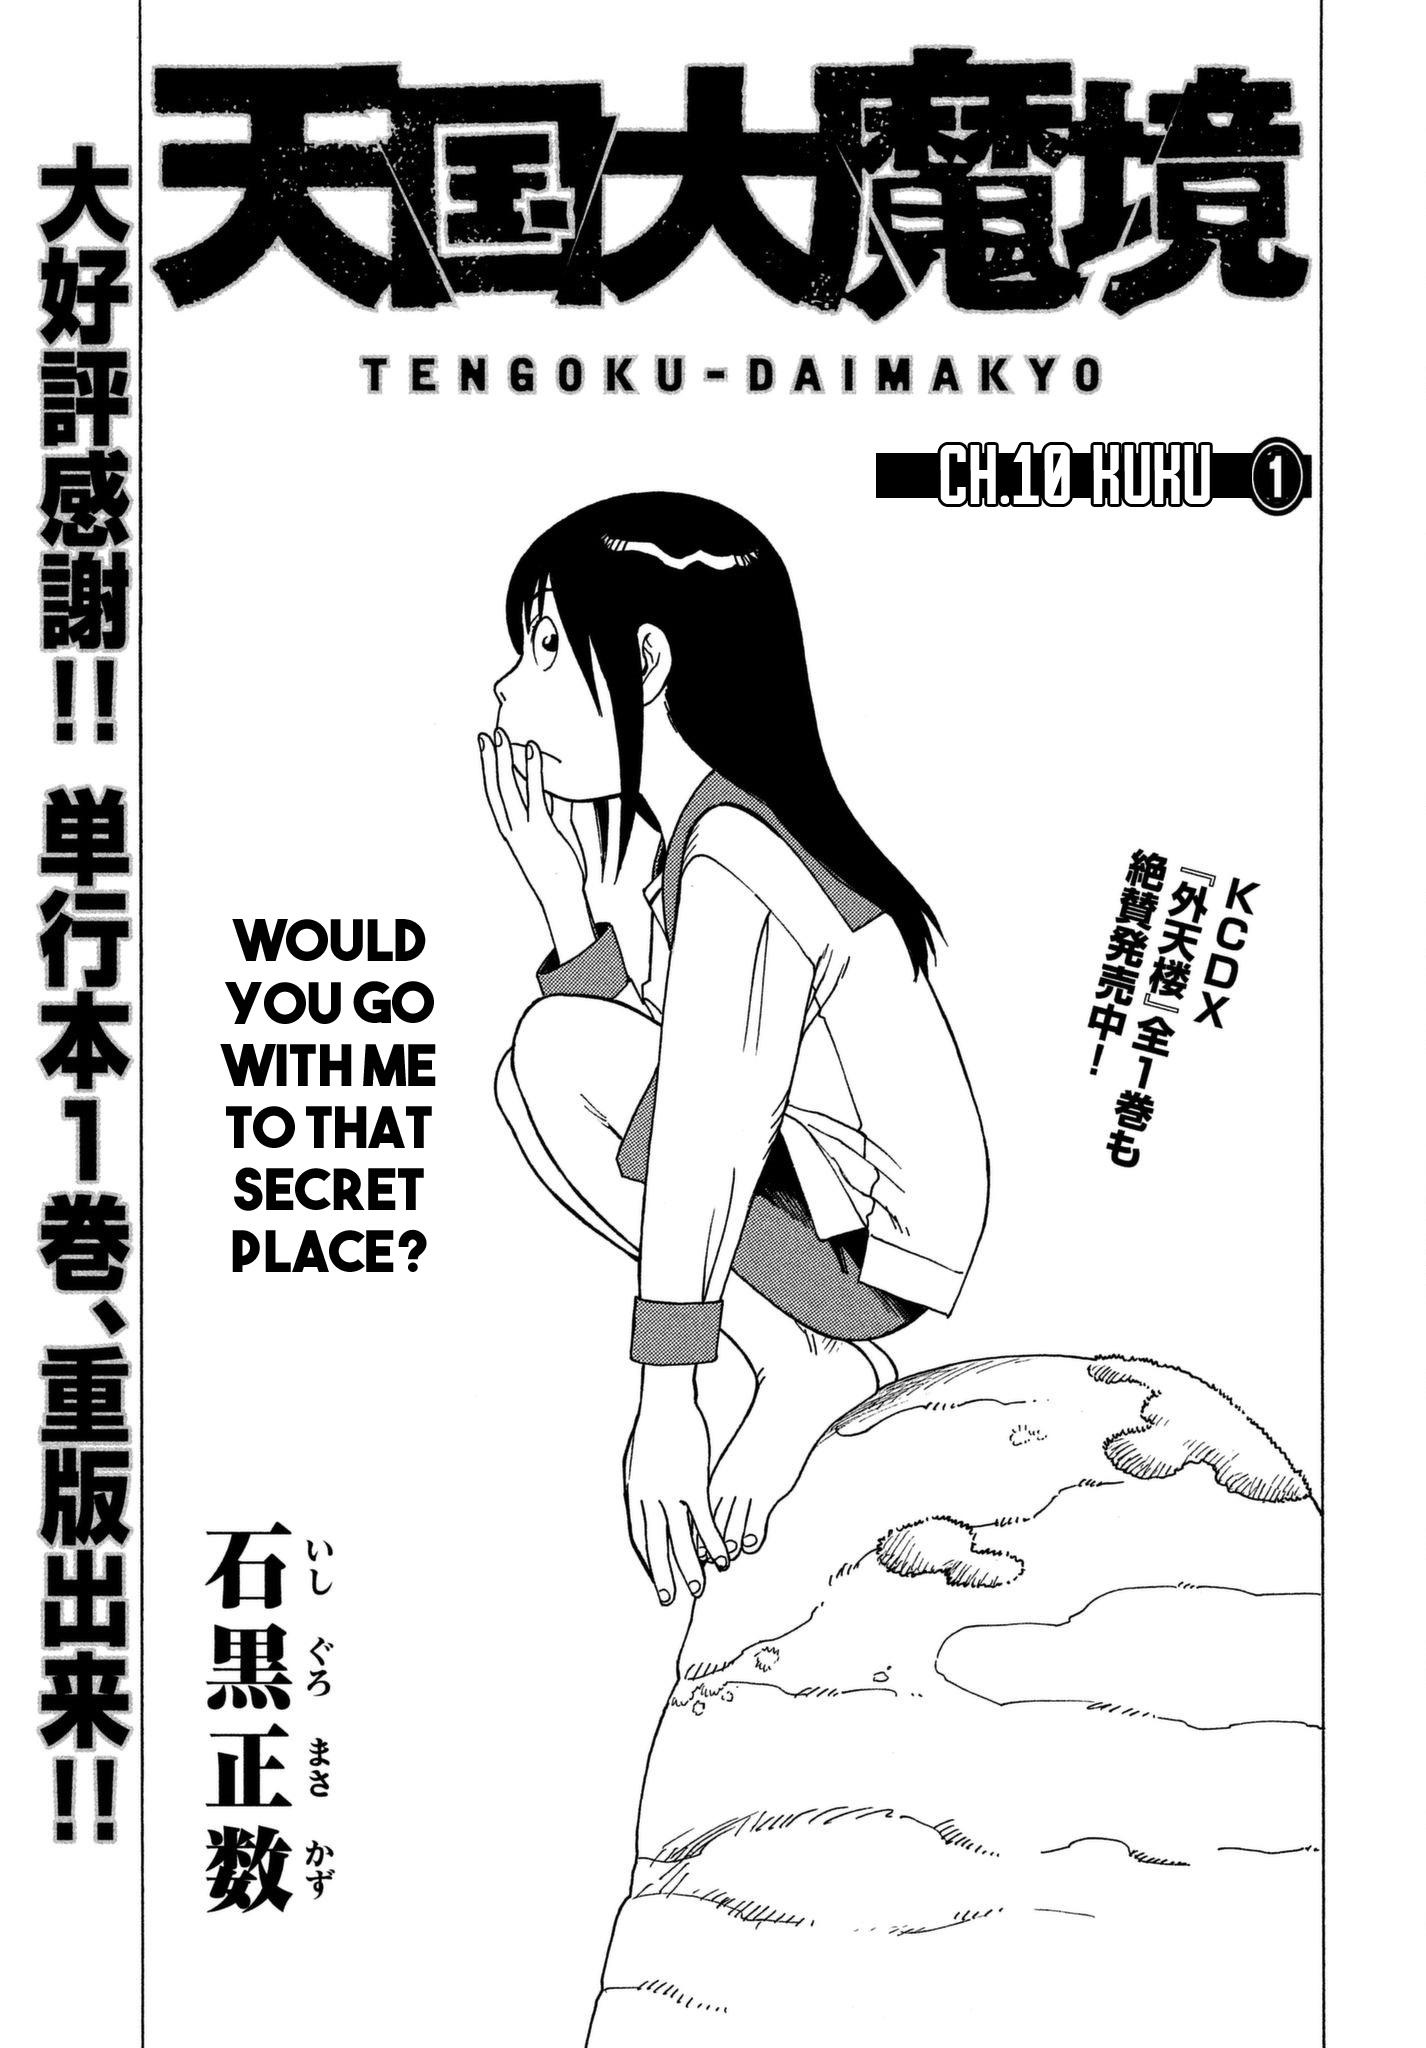 Read Tengoku Daimakyou Chapter 29: Walled City ➄ - Manganelo